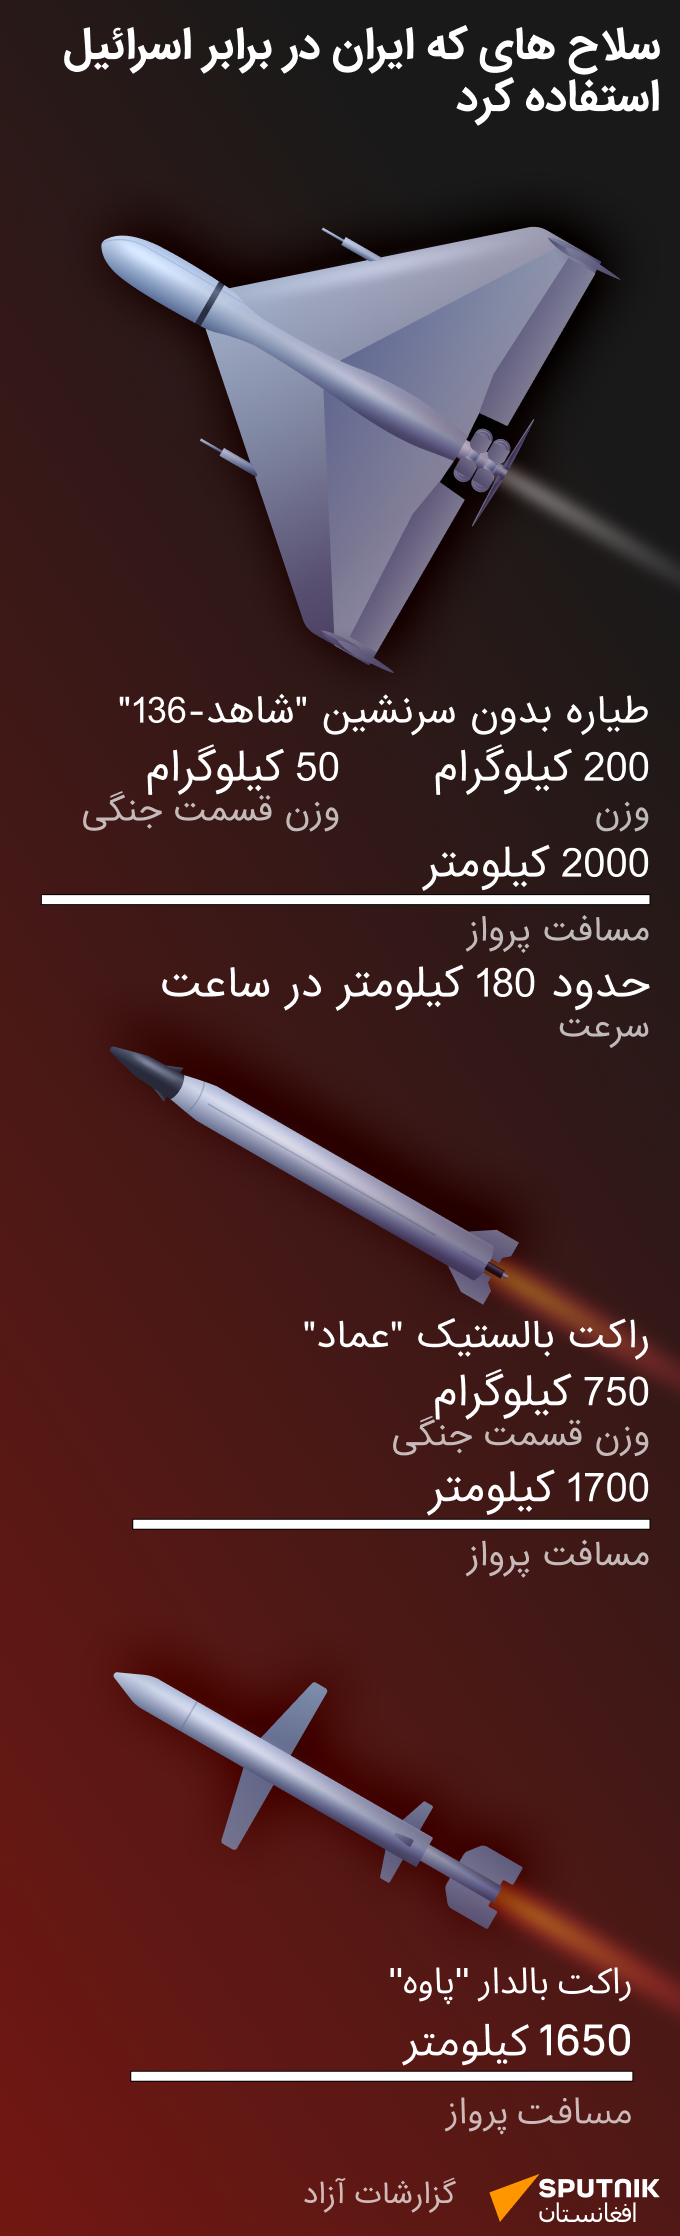 سلاح های که ایران در برابر اسرائیل استفاده کرد - اسپوتنیک افغانستان  